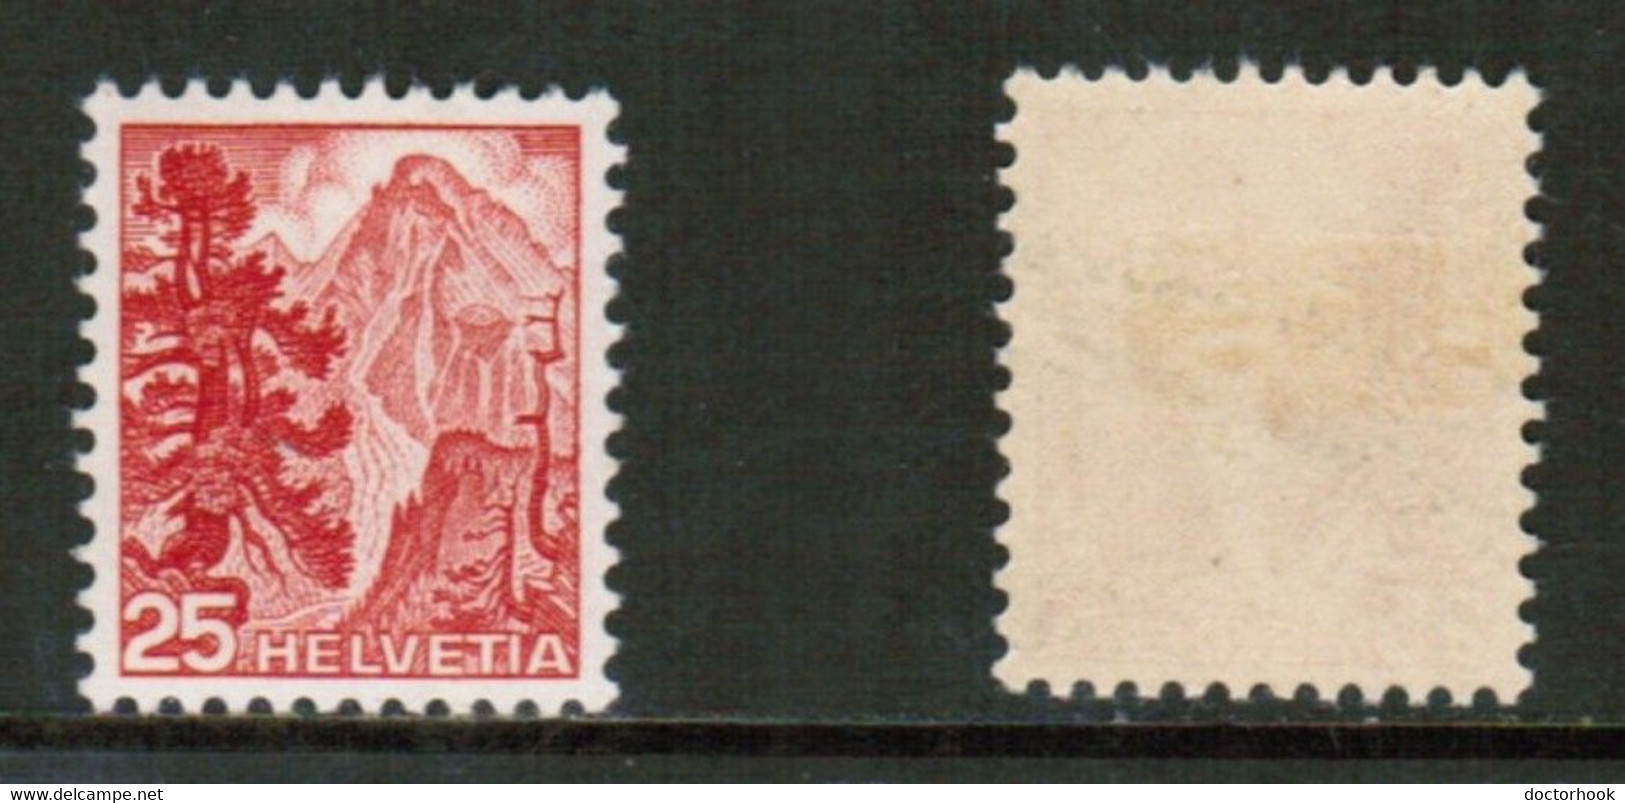 SWITZERLAND  Scott # 319* MINT LH (CONDITION AS PER SCAN) (WW-1-73) - Unused Stamps